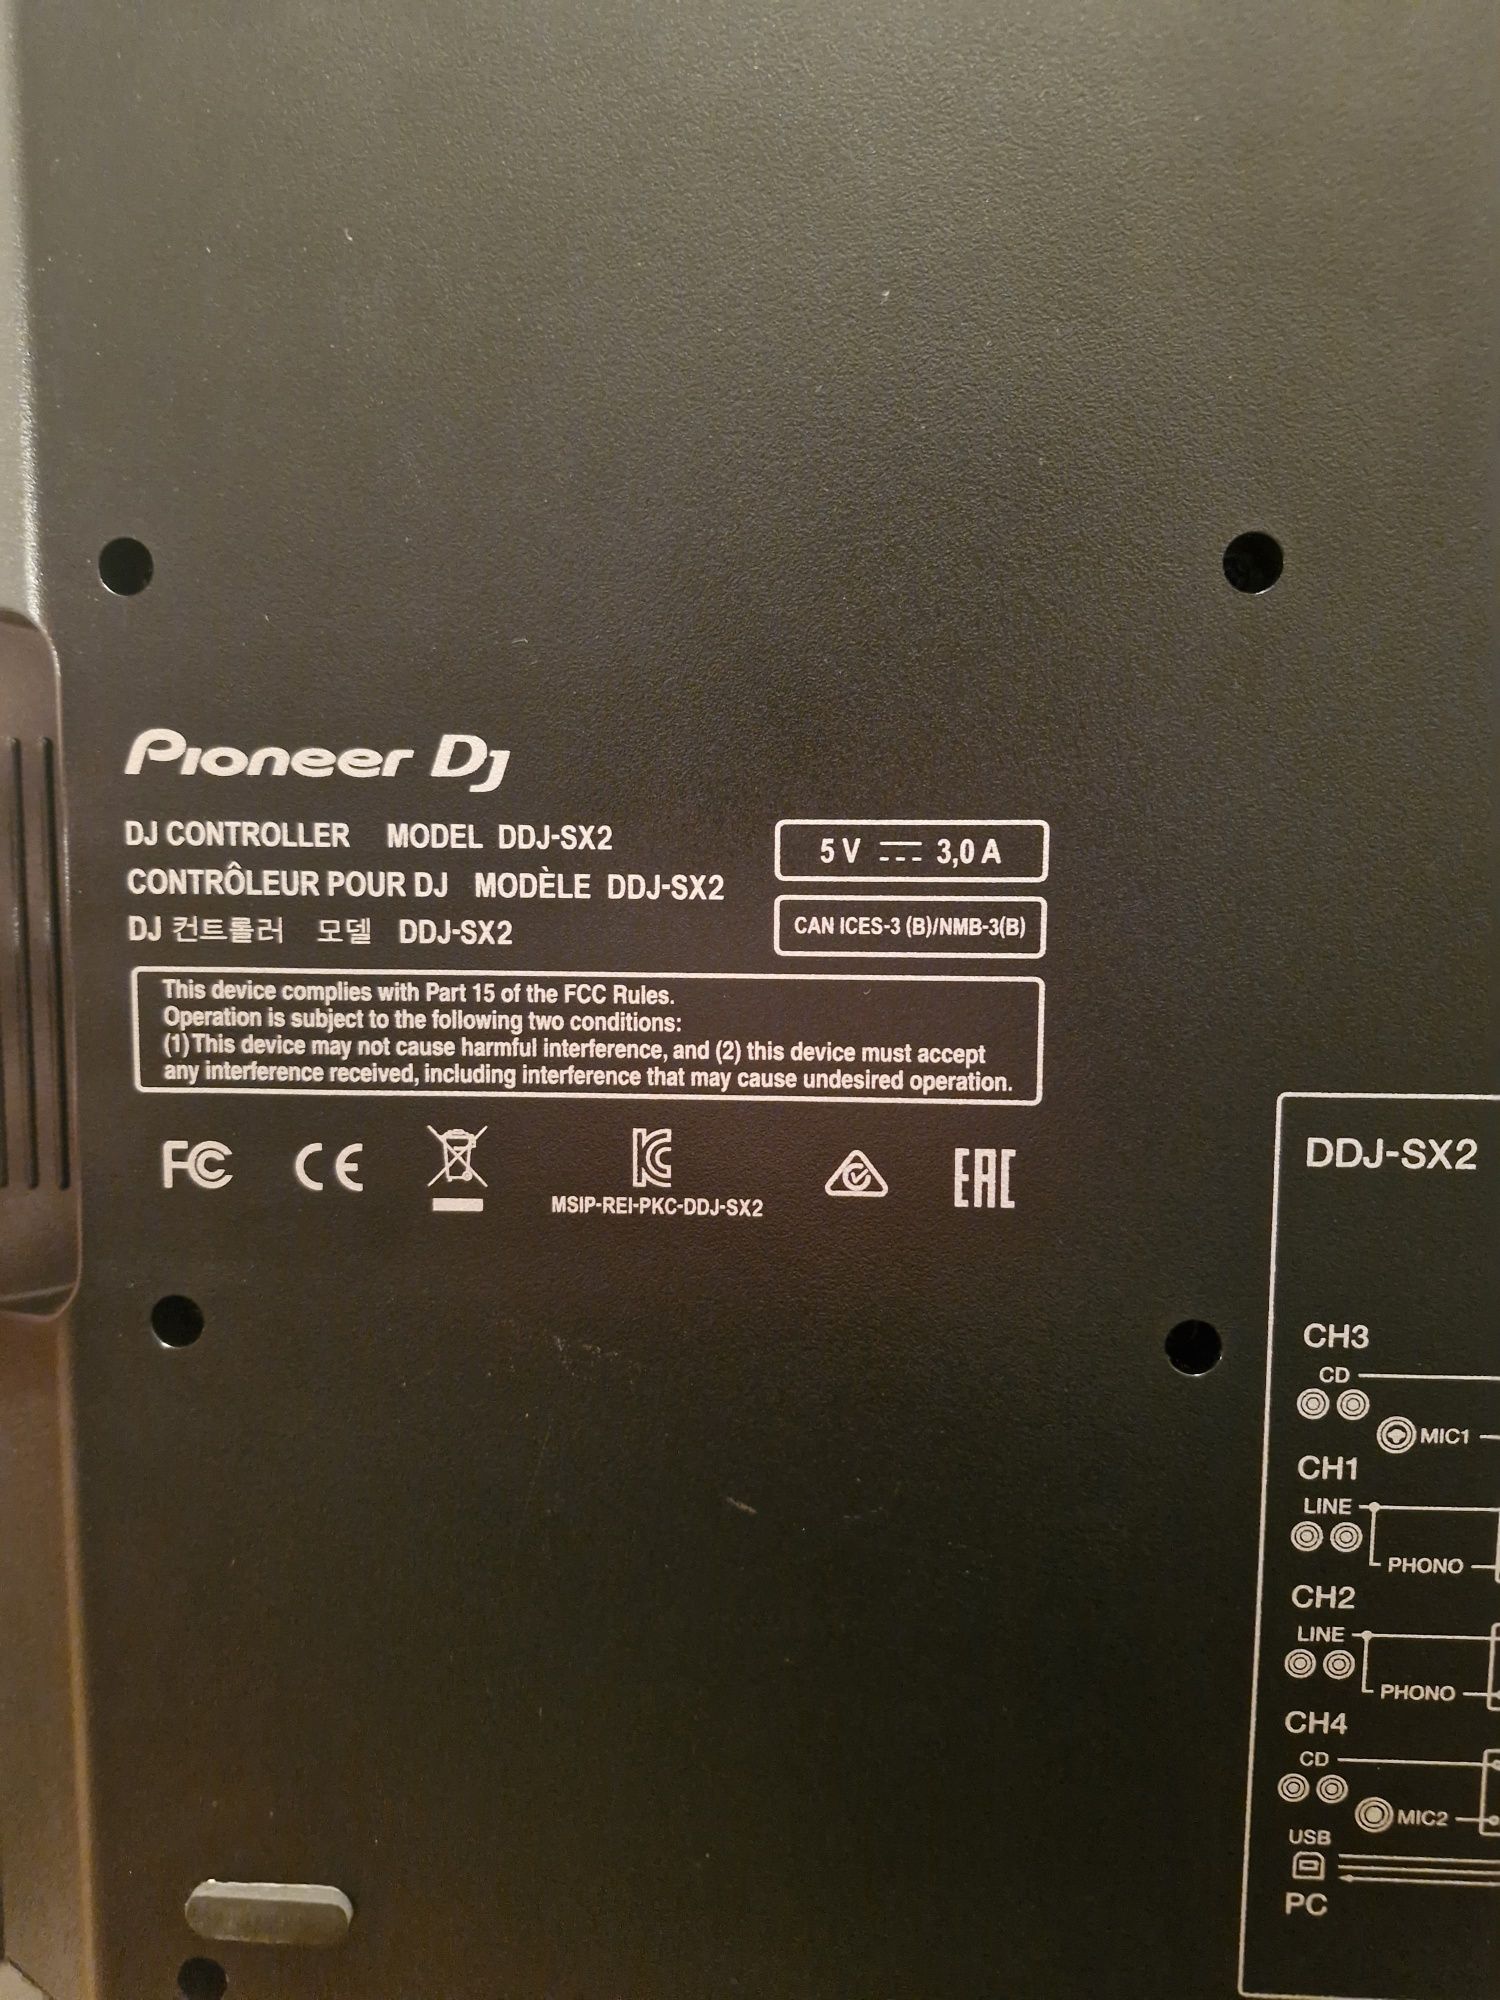 Consola DJ Serato Pioneer DDJ-SX2